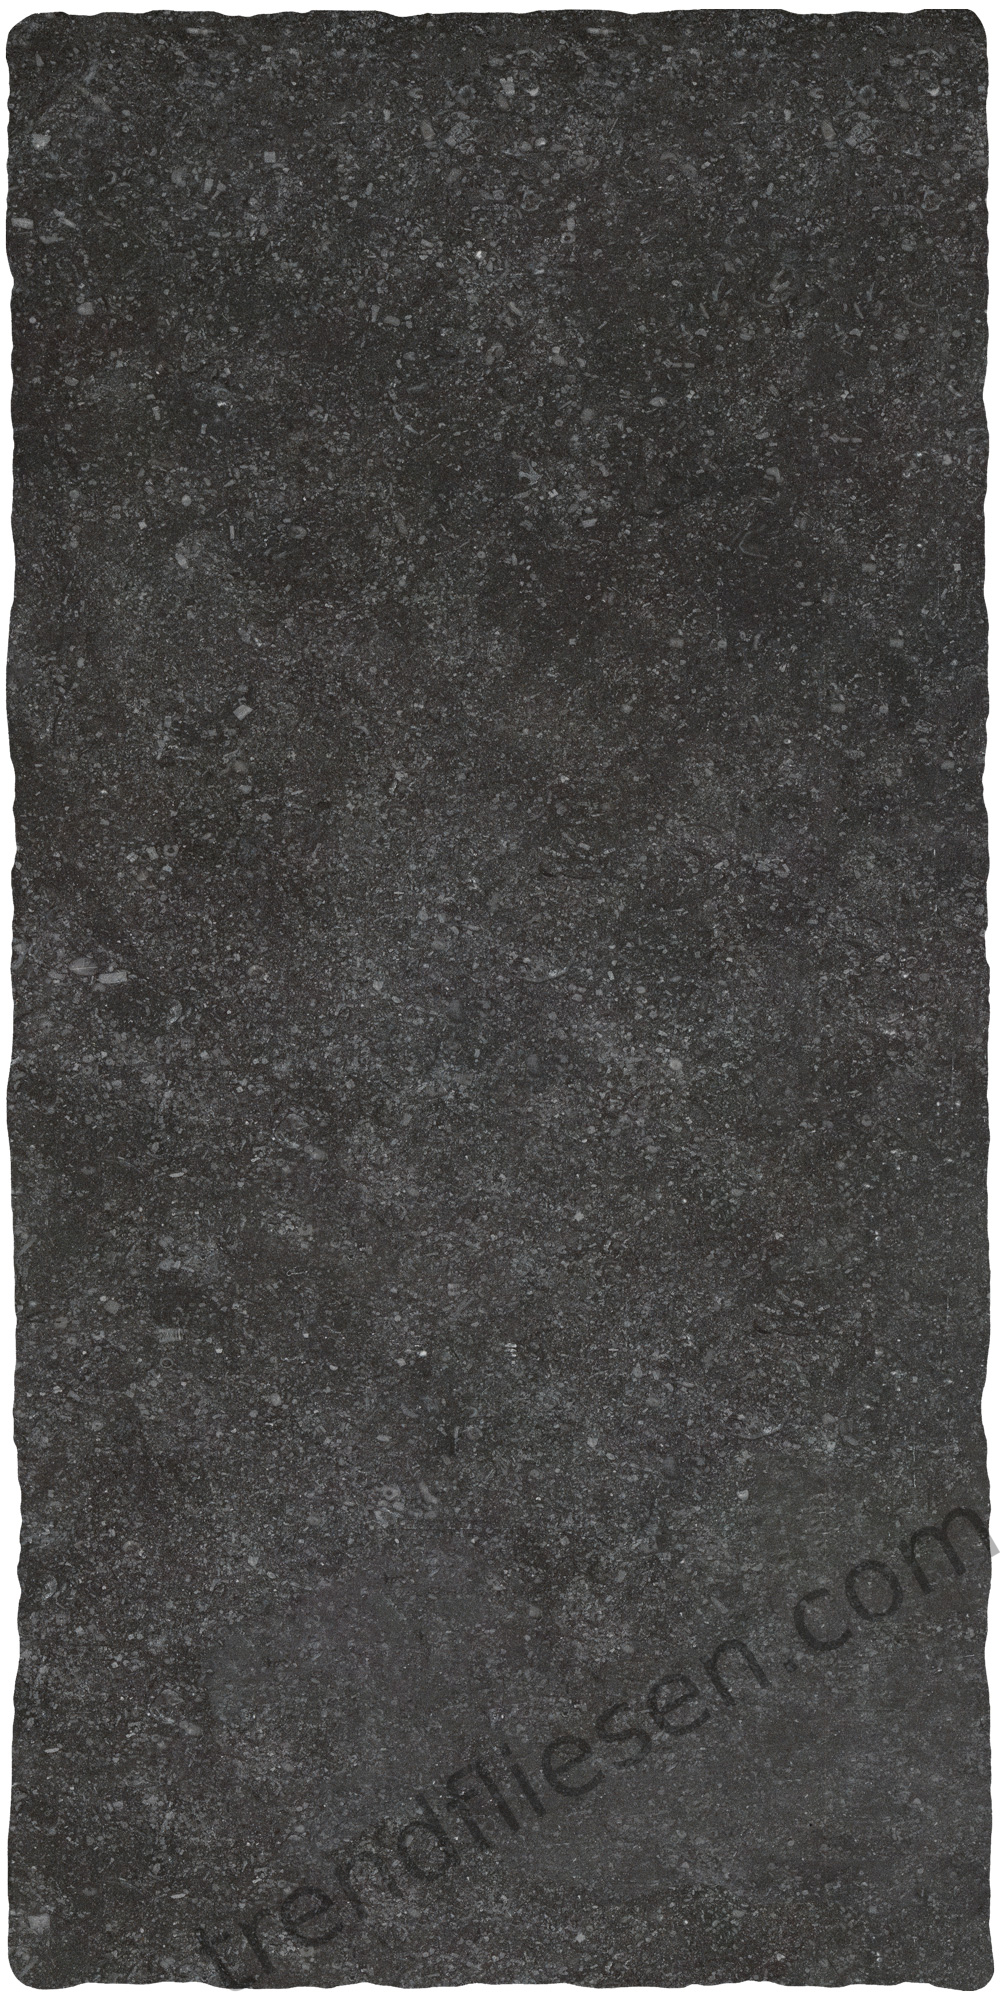 Stone Gres Anticato Belgisch Granit 900274 natur 40x80cm 20mm